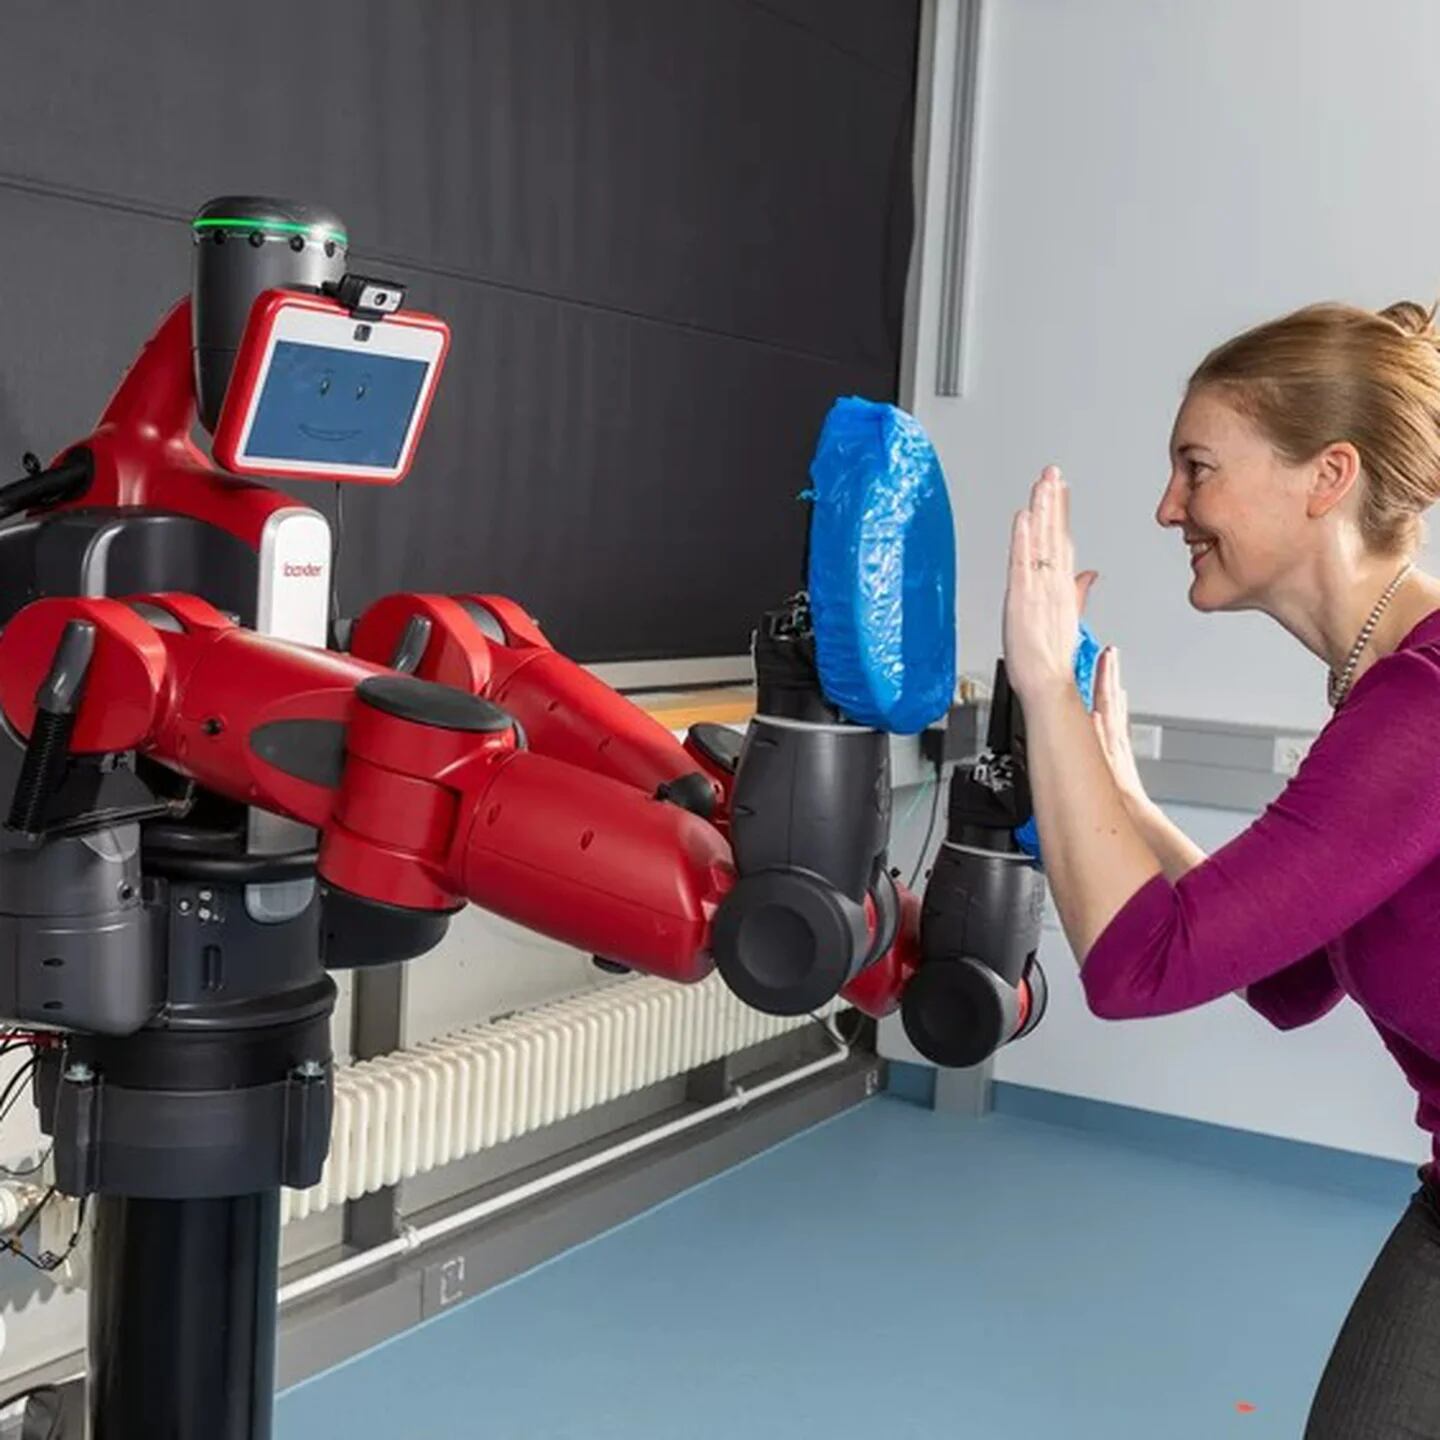 El robot que plancha y más inventos que facilitan la vida - canalHOGAR